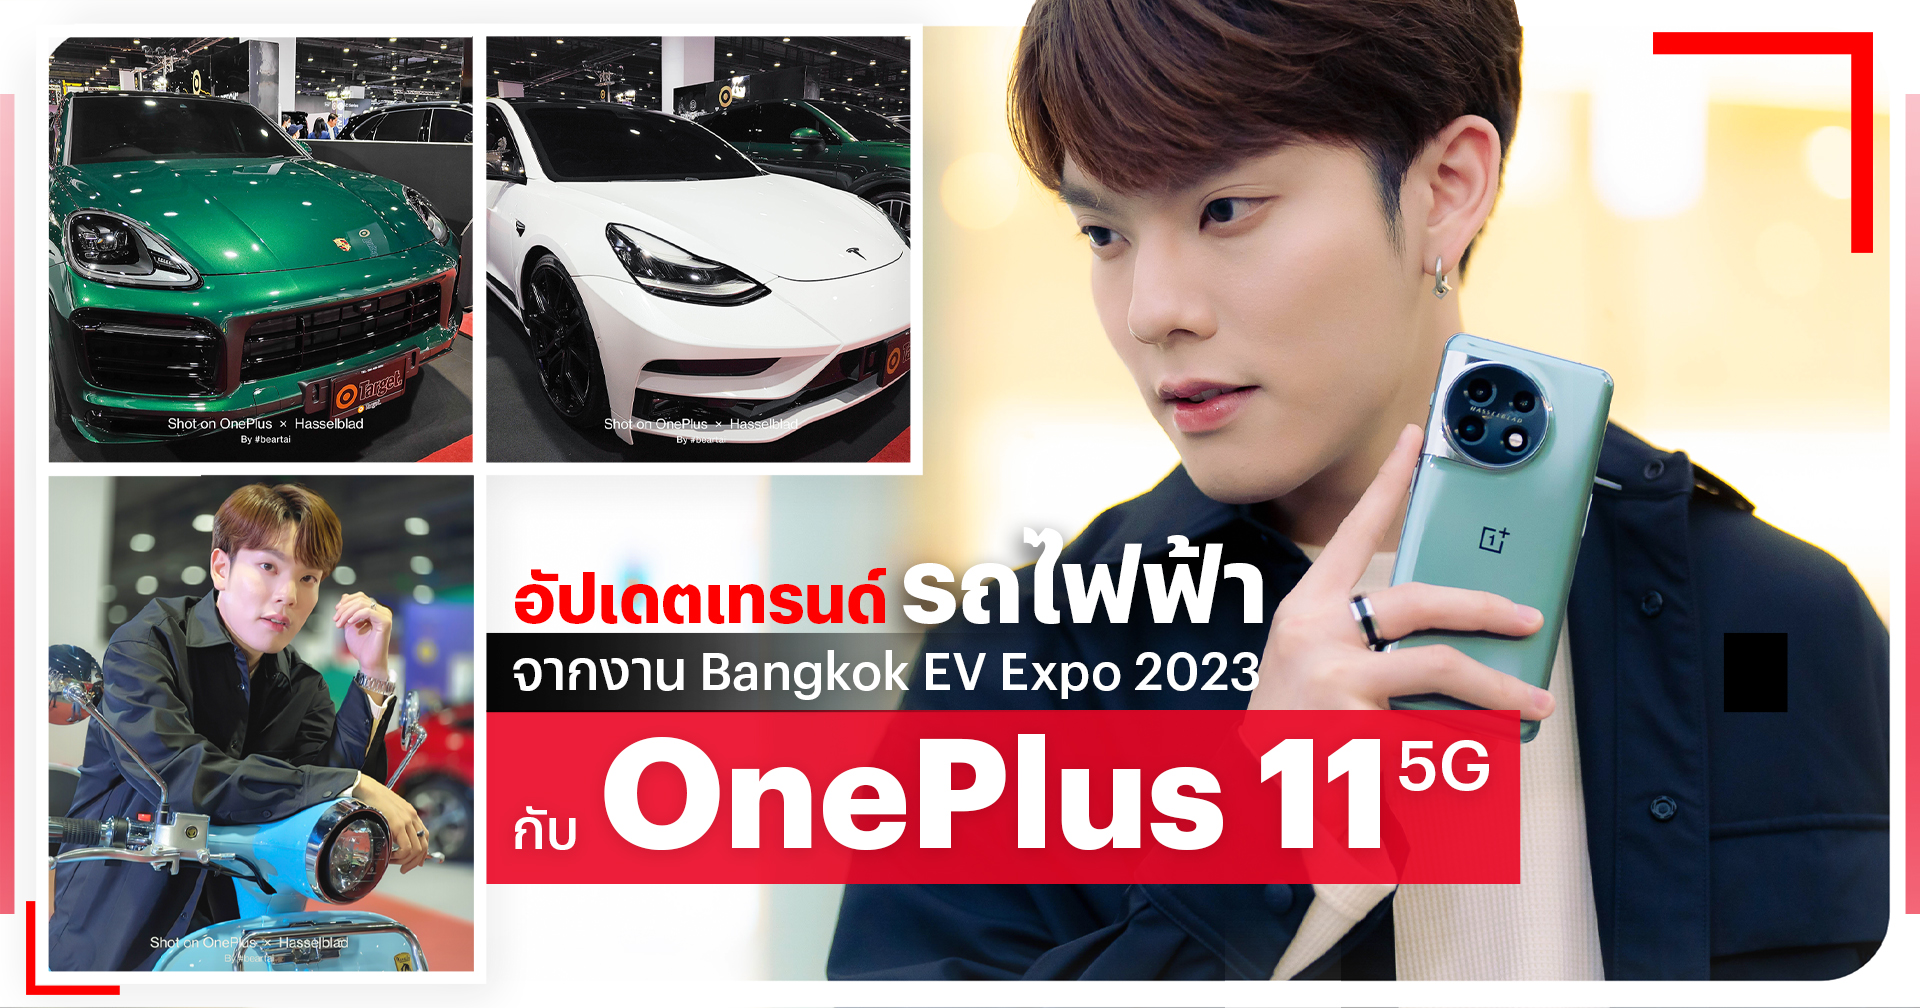 อัปเดตเทรนด์รถไฟฟ้าจากงาน Bangkok EV Expo 2023 กับ OnePlus 11 5G